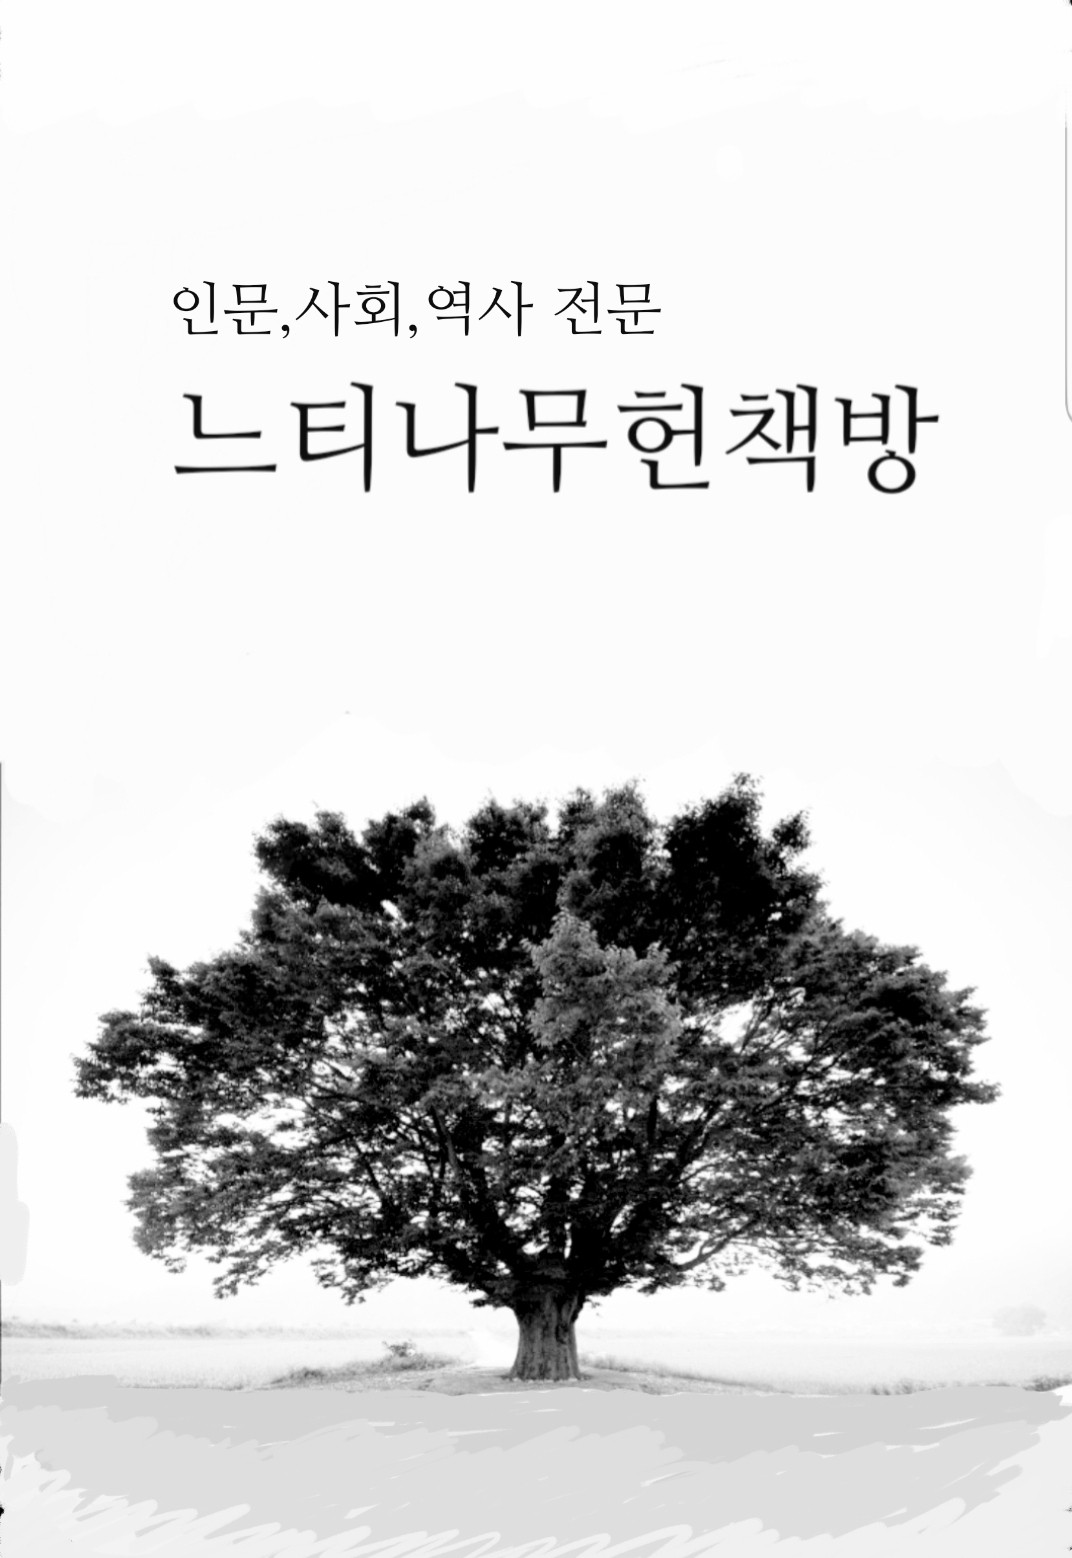 2000년데를 가는 한국인의 가치관 - 교수 아카데미 신서 1 (알오32코너)